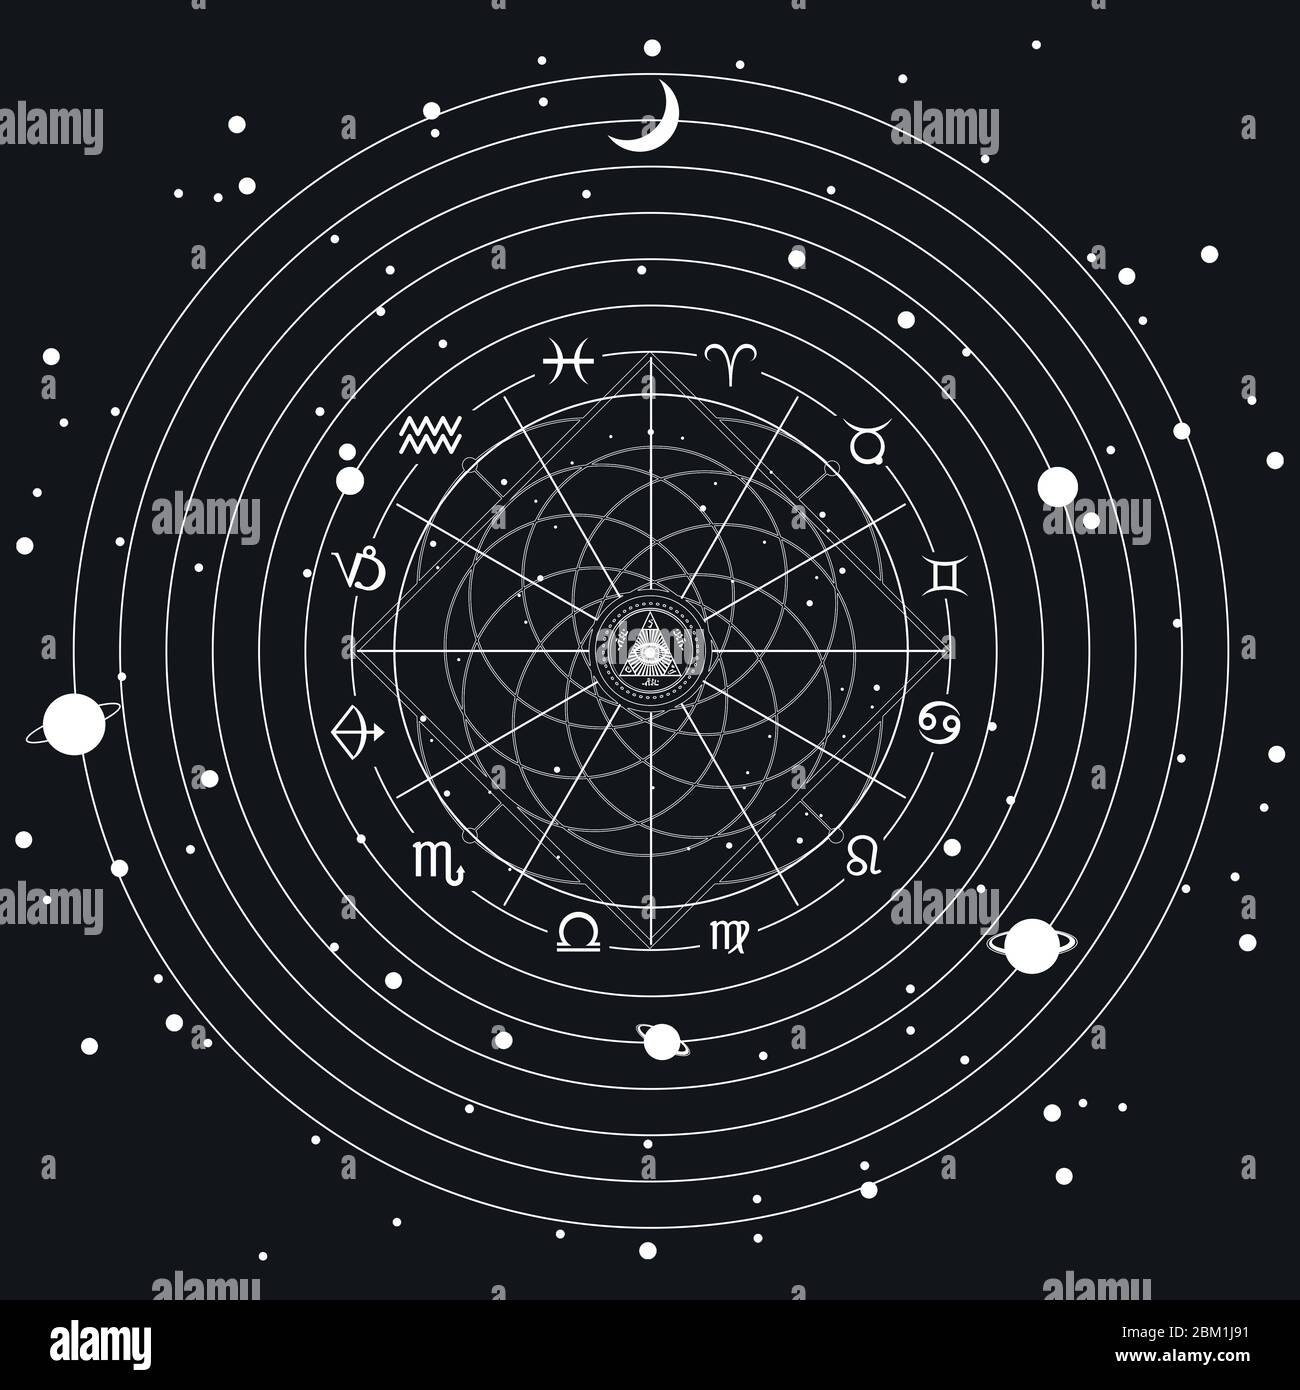 Signes cosmiques mystiques minimalistes, arrière-plan ésotérique. Projection de roue astrologique avec symboles du zodiaque. Horoscope prévisions futures, consultation s Banque D'Images